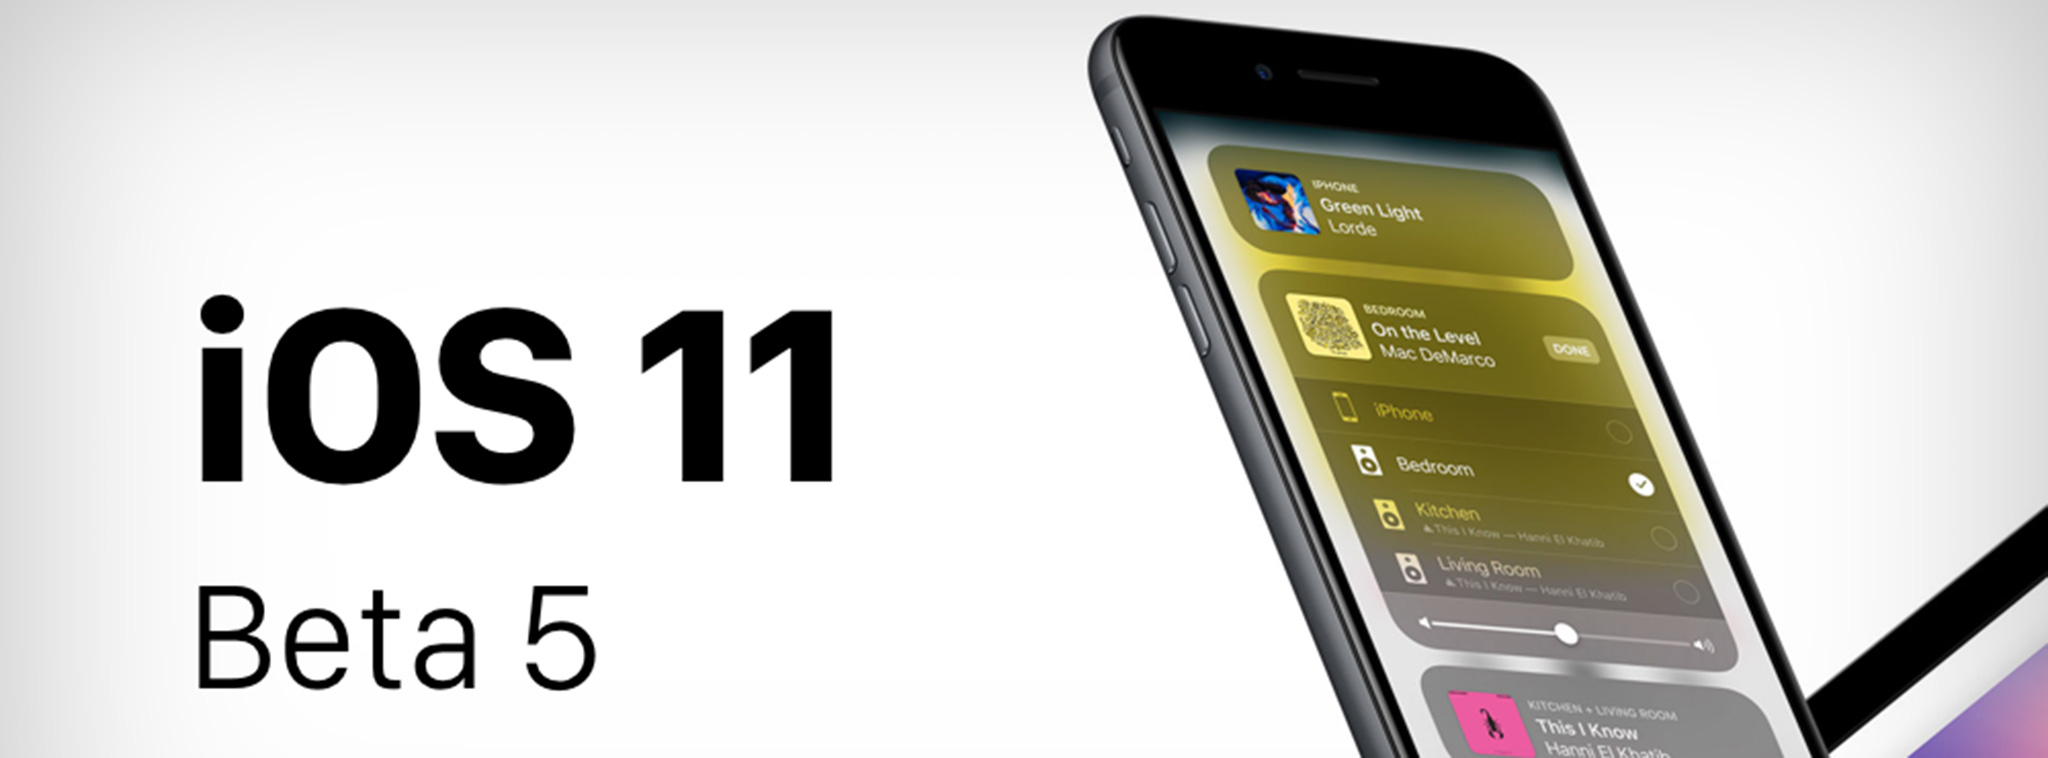 Apple phát hành iOS 11.1 beta 5, mời các bạn tải về